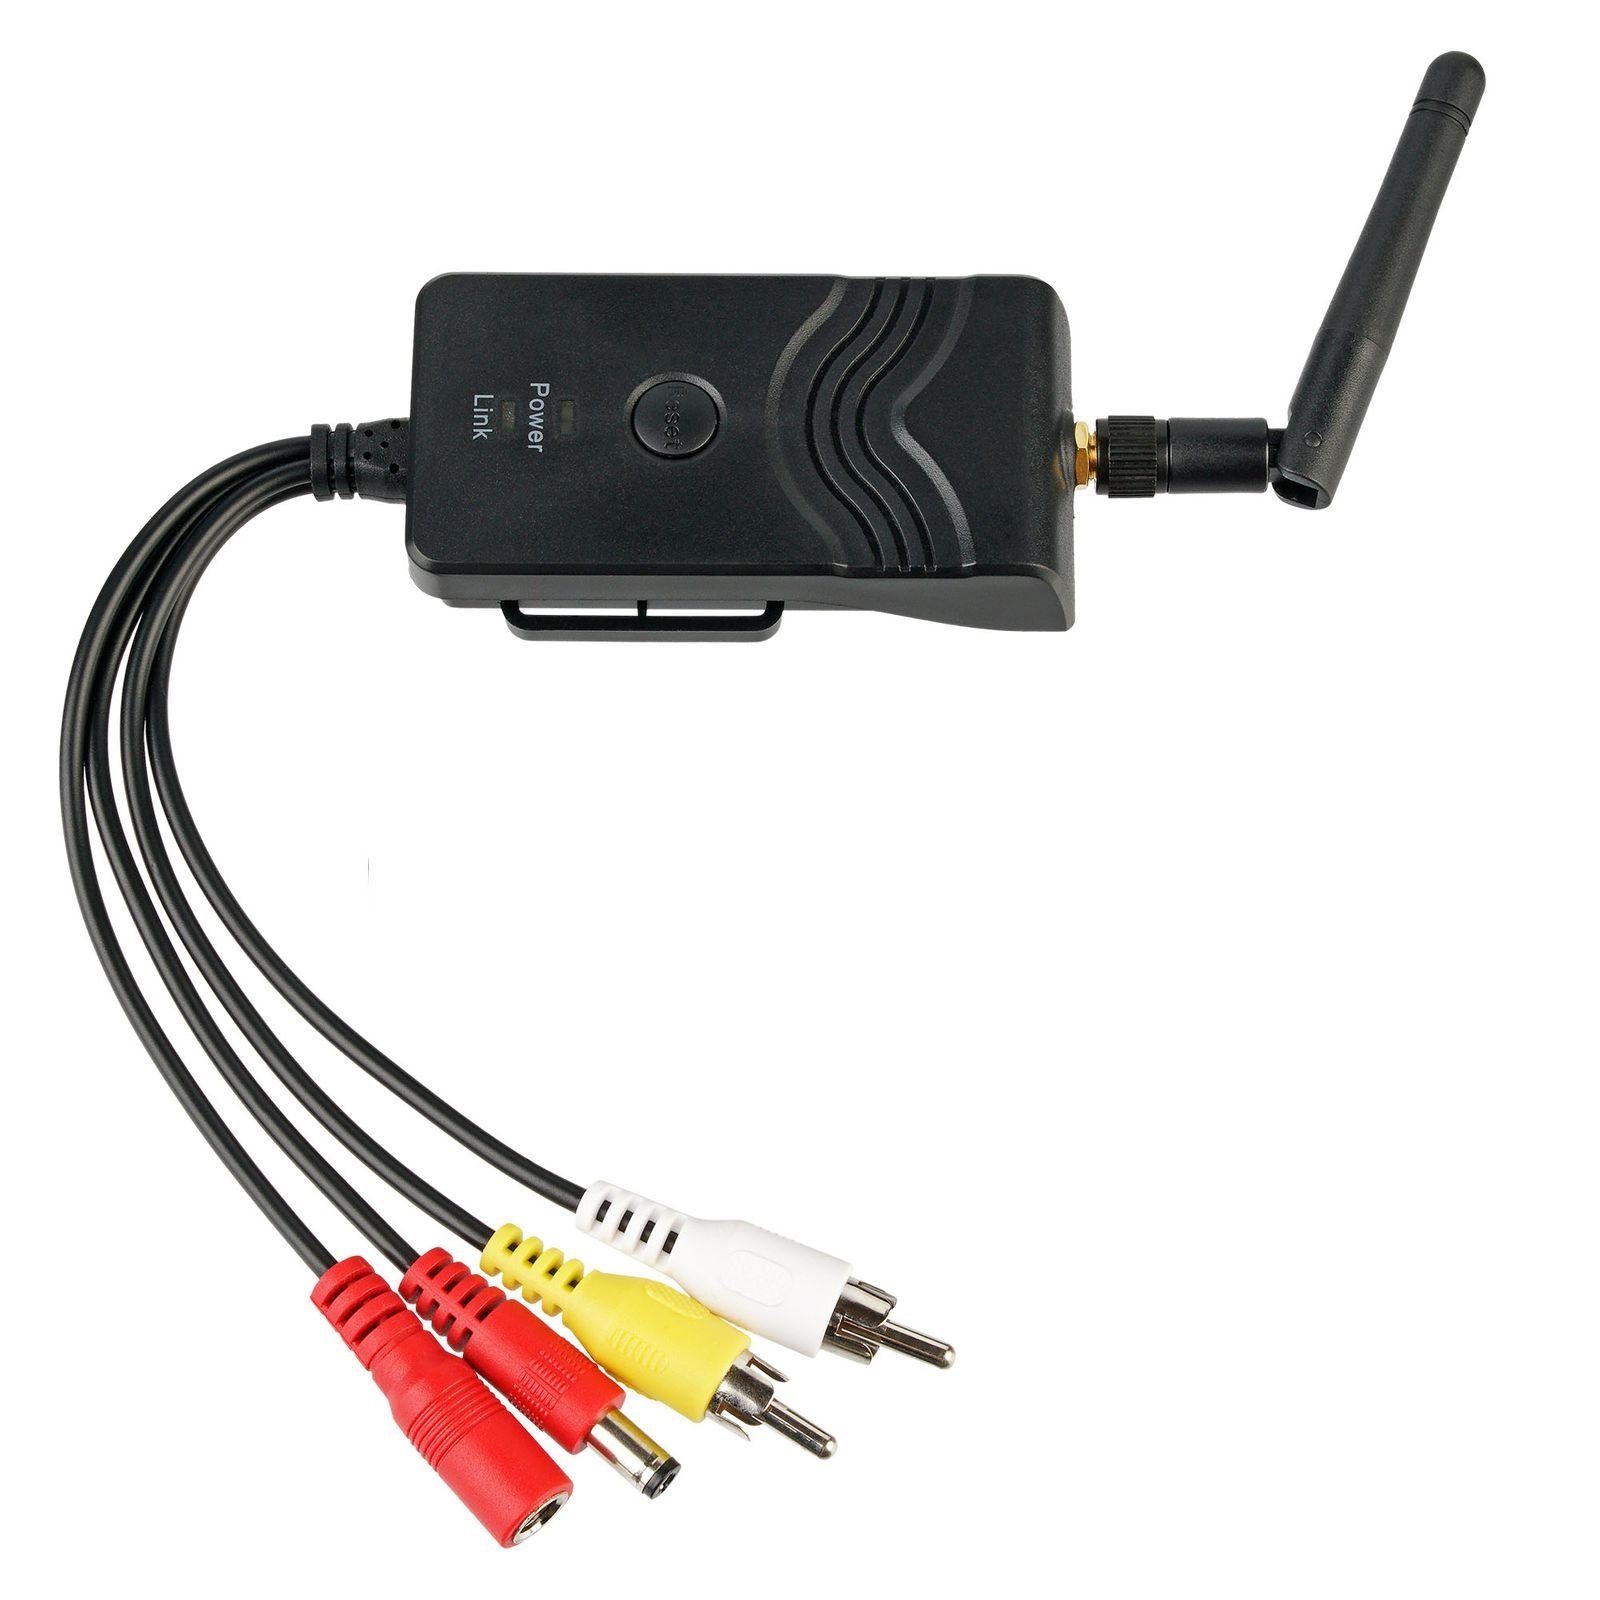 CARMATRIX CM-903S Rückfahrkamera (Auto WLAN Rückfahrsystem WiFi AV Modul KFZ Transmitter Sender Empfänger, App) mit für HD Funk